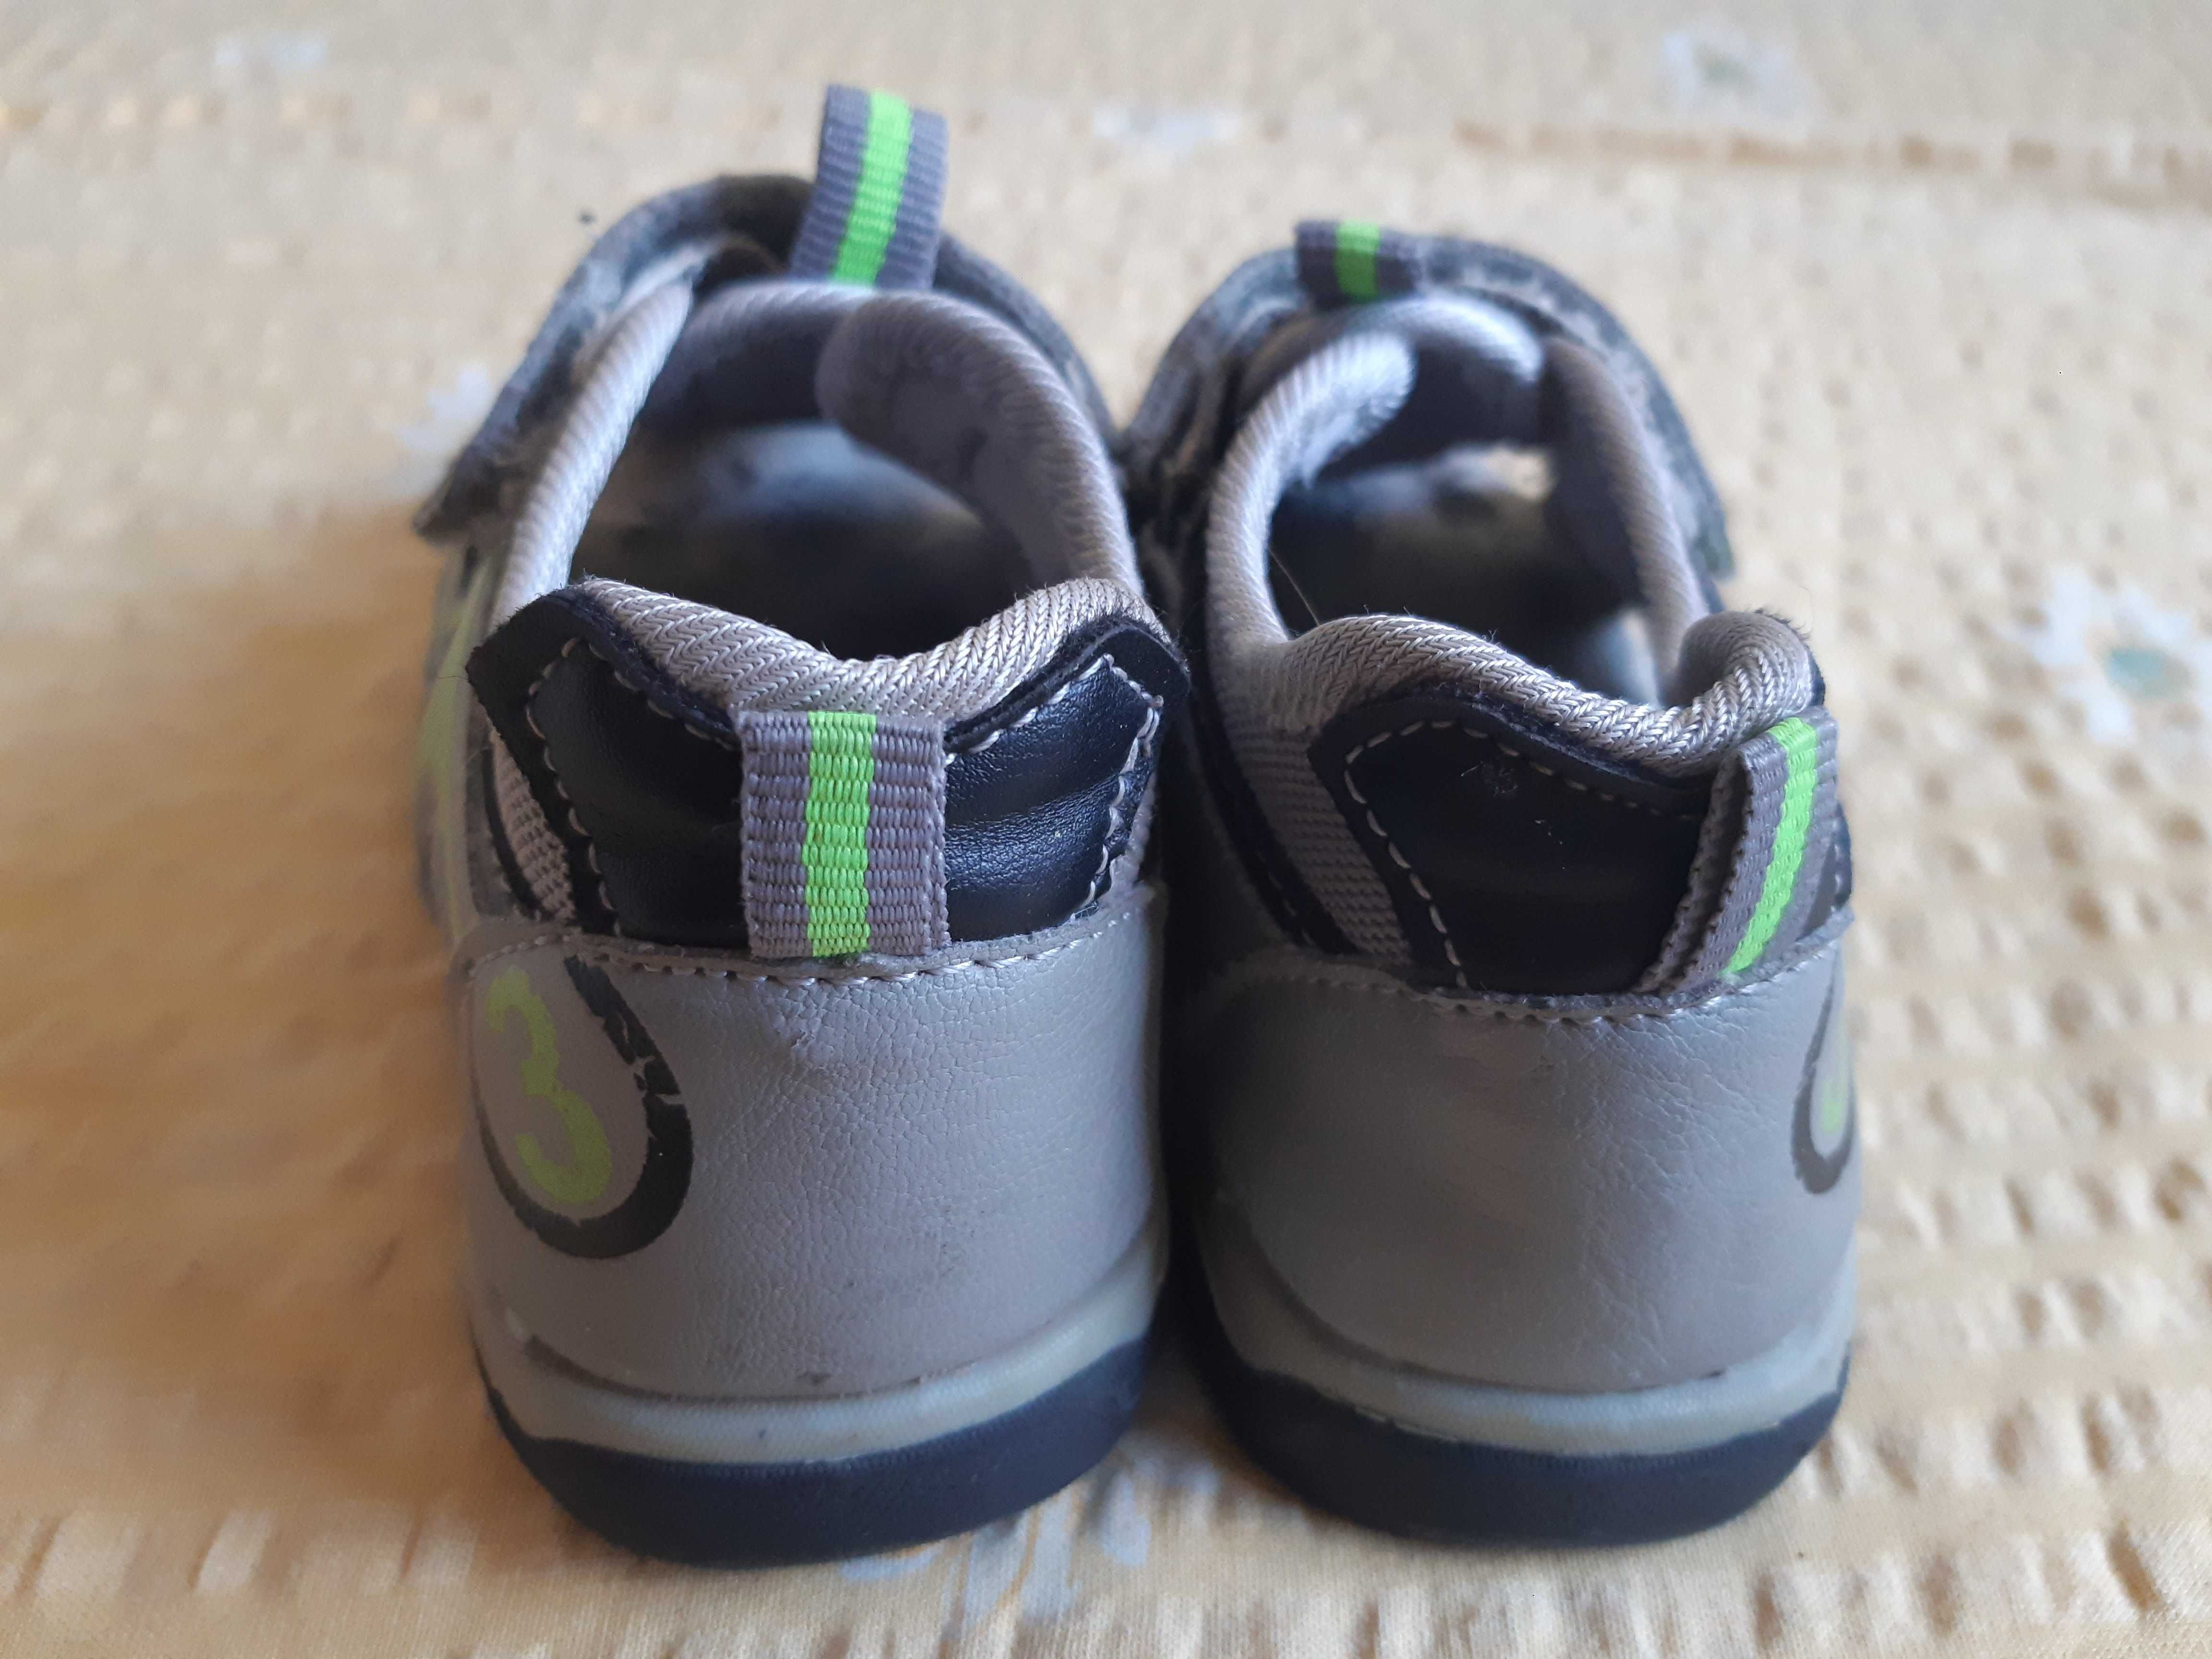 Sandałki chłopięce siwe - rozmiar 24